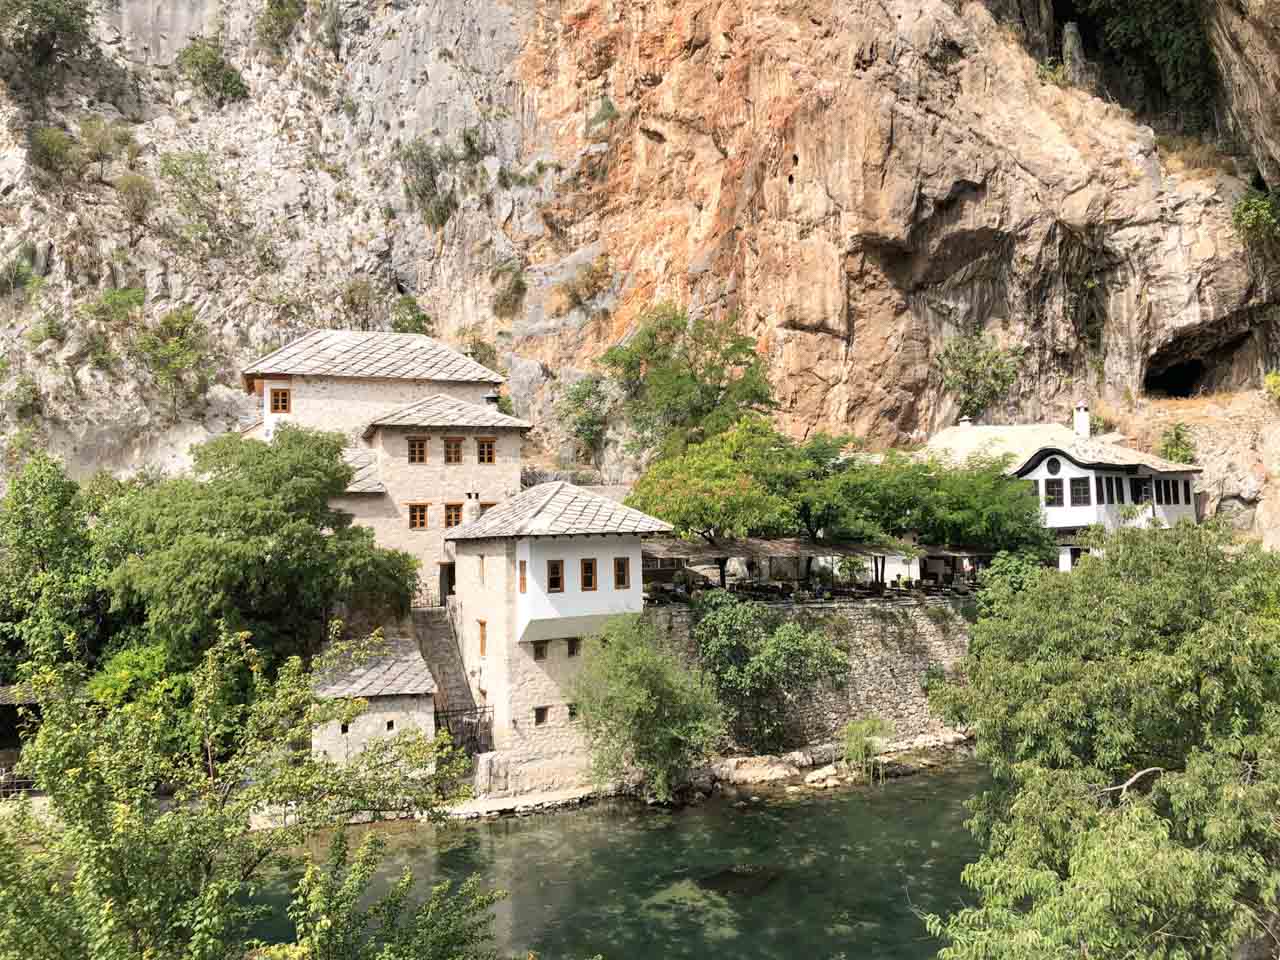 Blagaj Tekija monastery seen from above